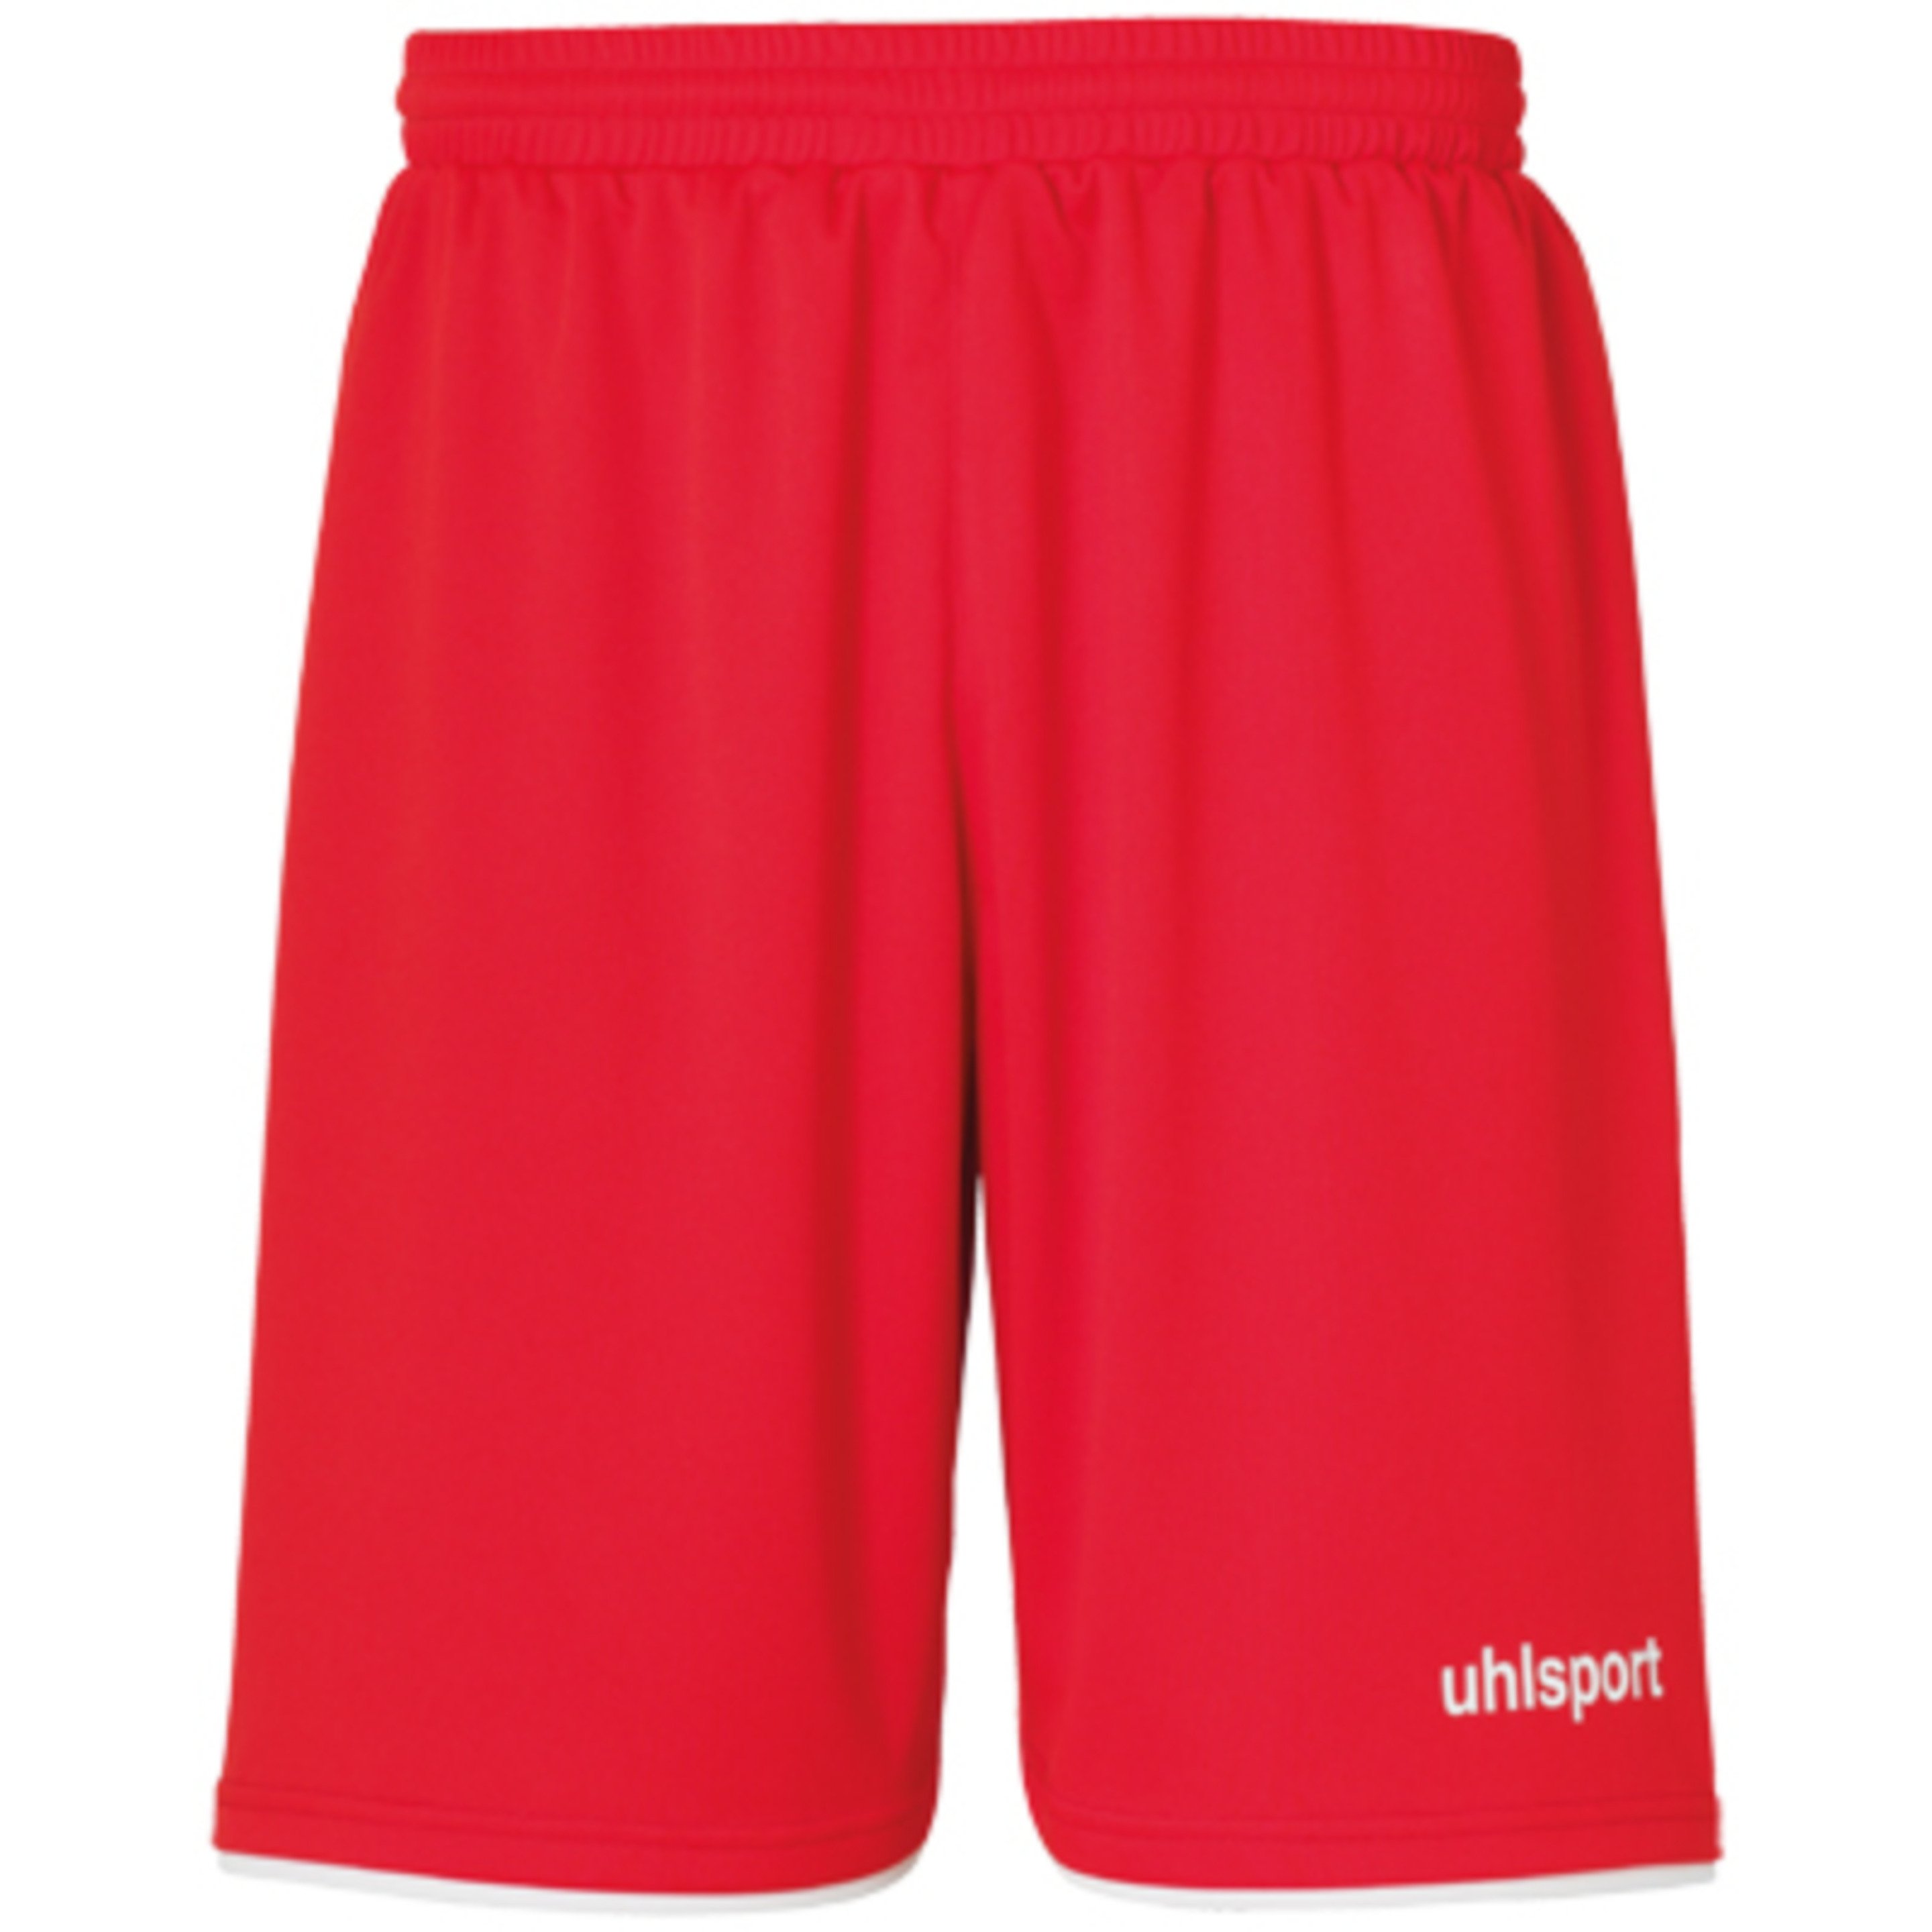 Club Shorts Rojo/blanco Uhlsport